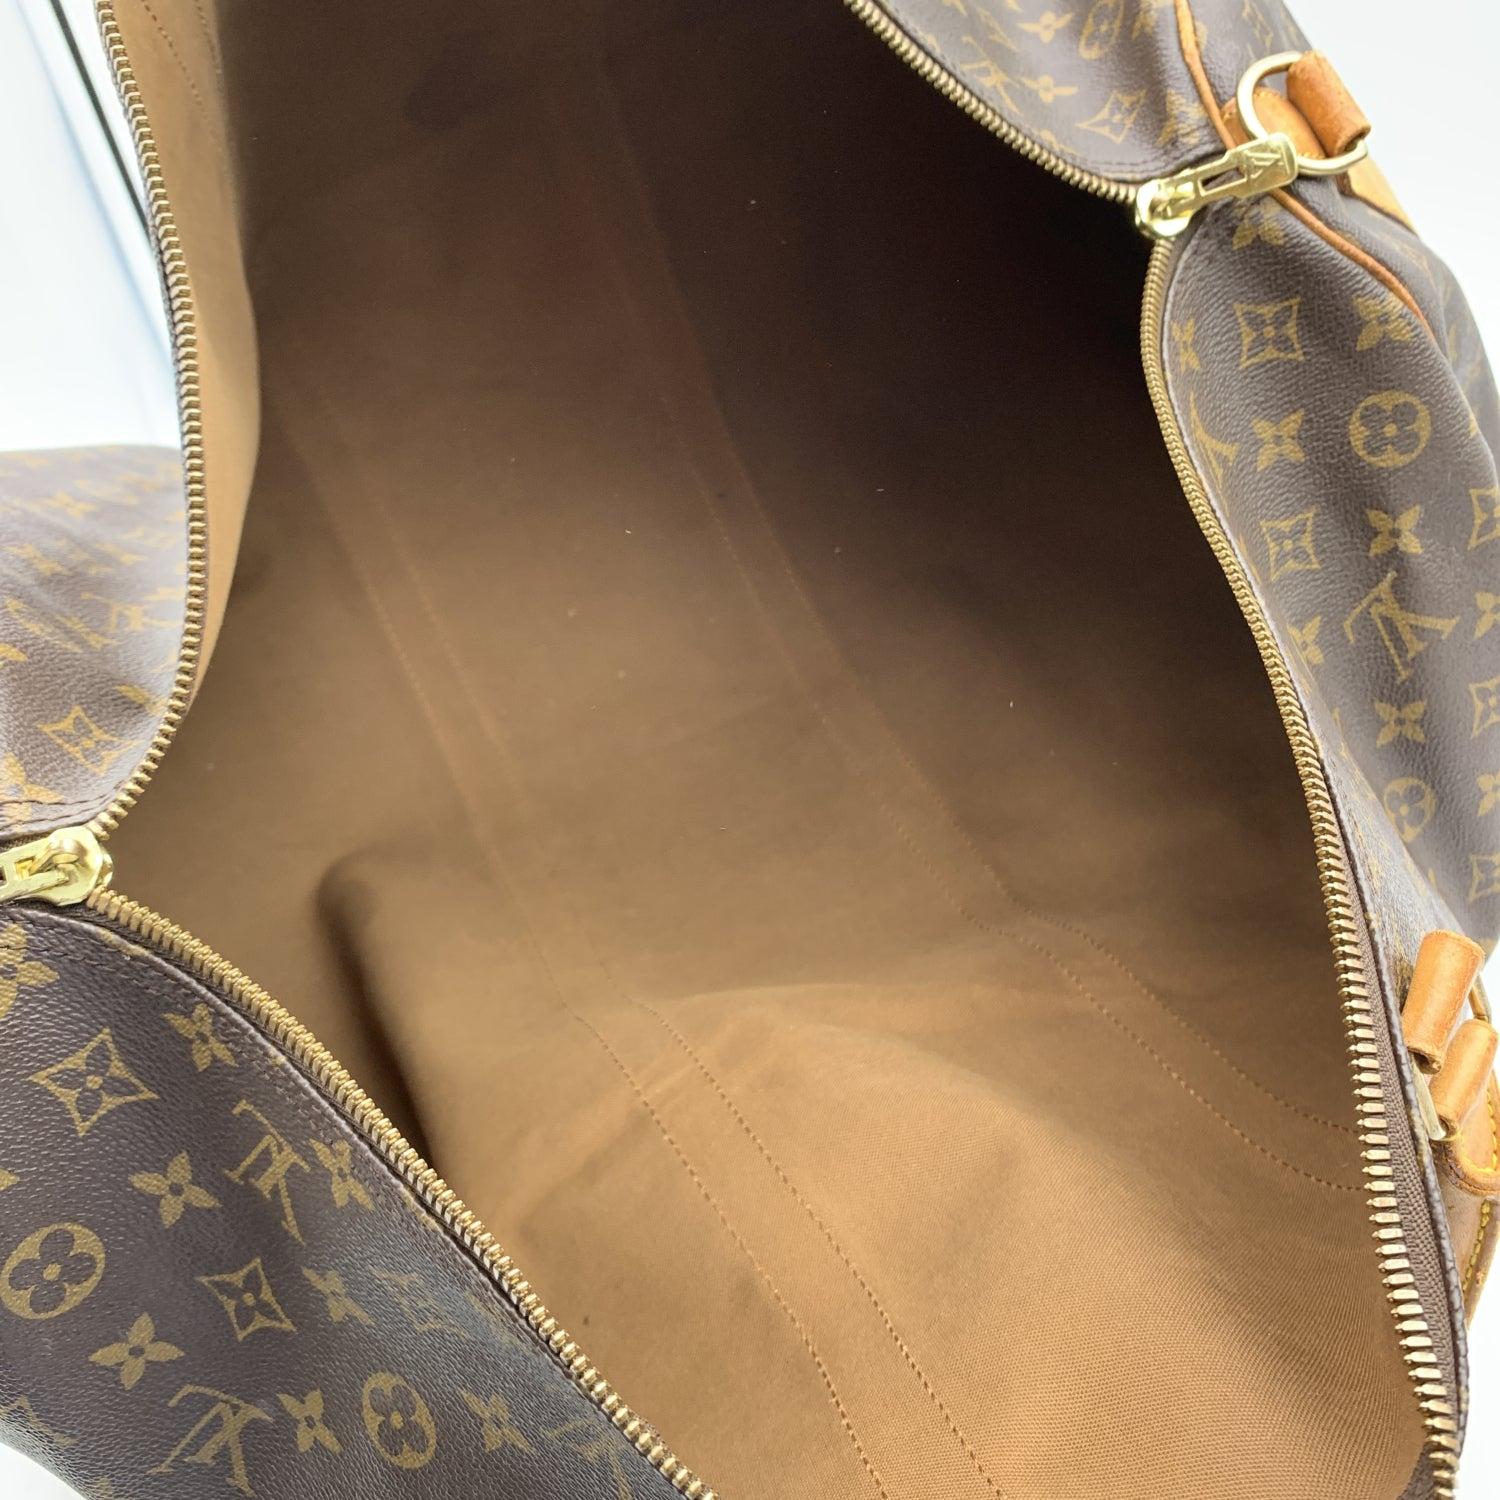 Louis Vuitton Monogram Keepall 60 Large Duffle Travel Bag M41412 1